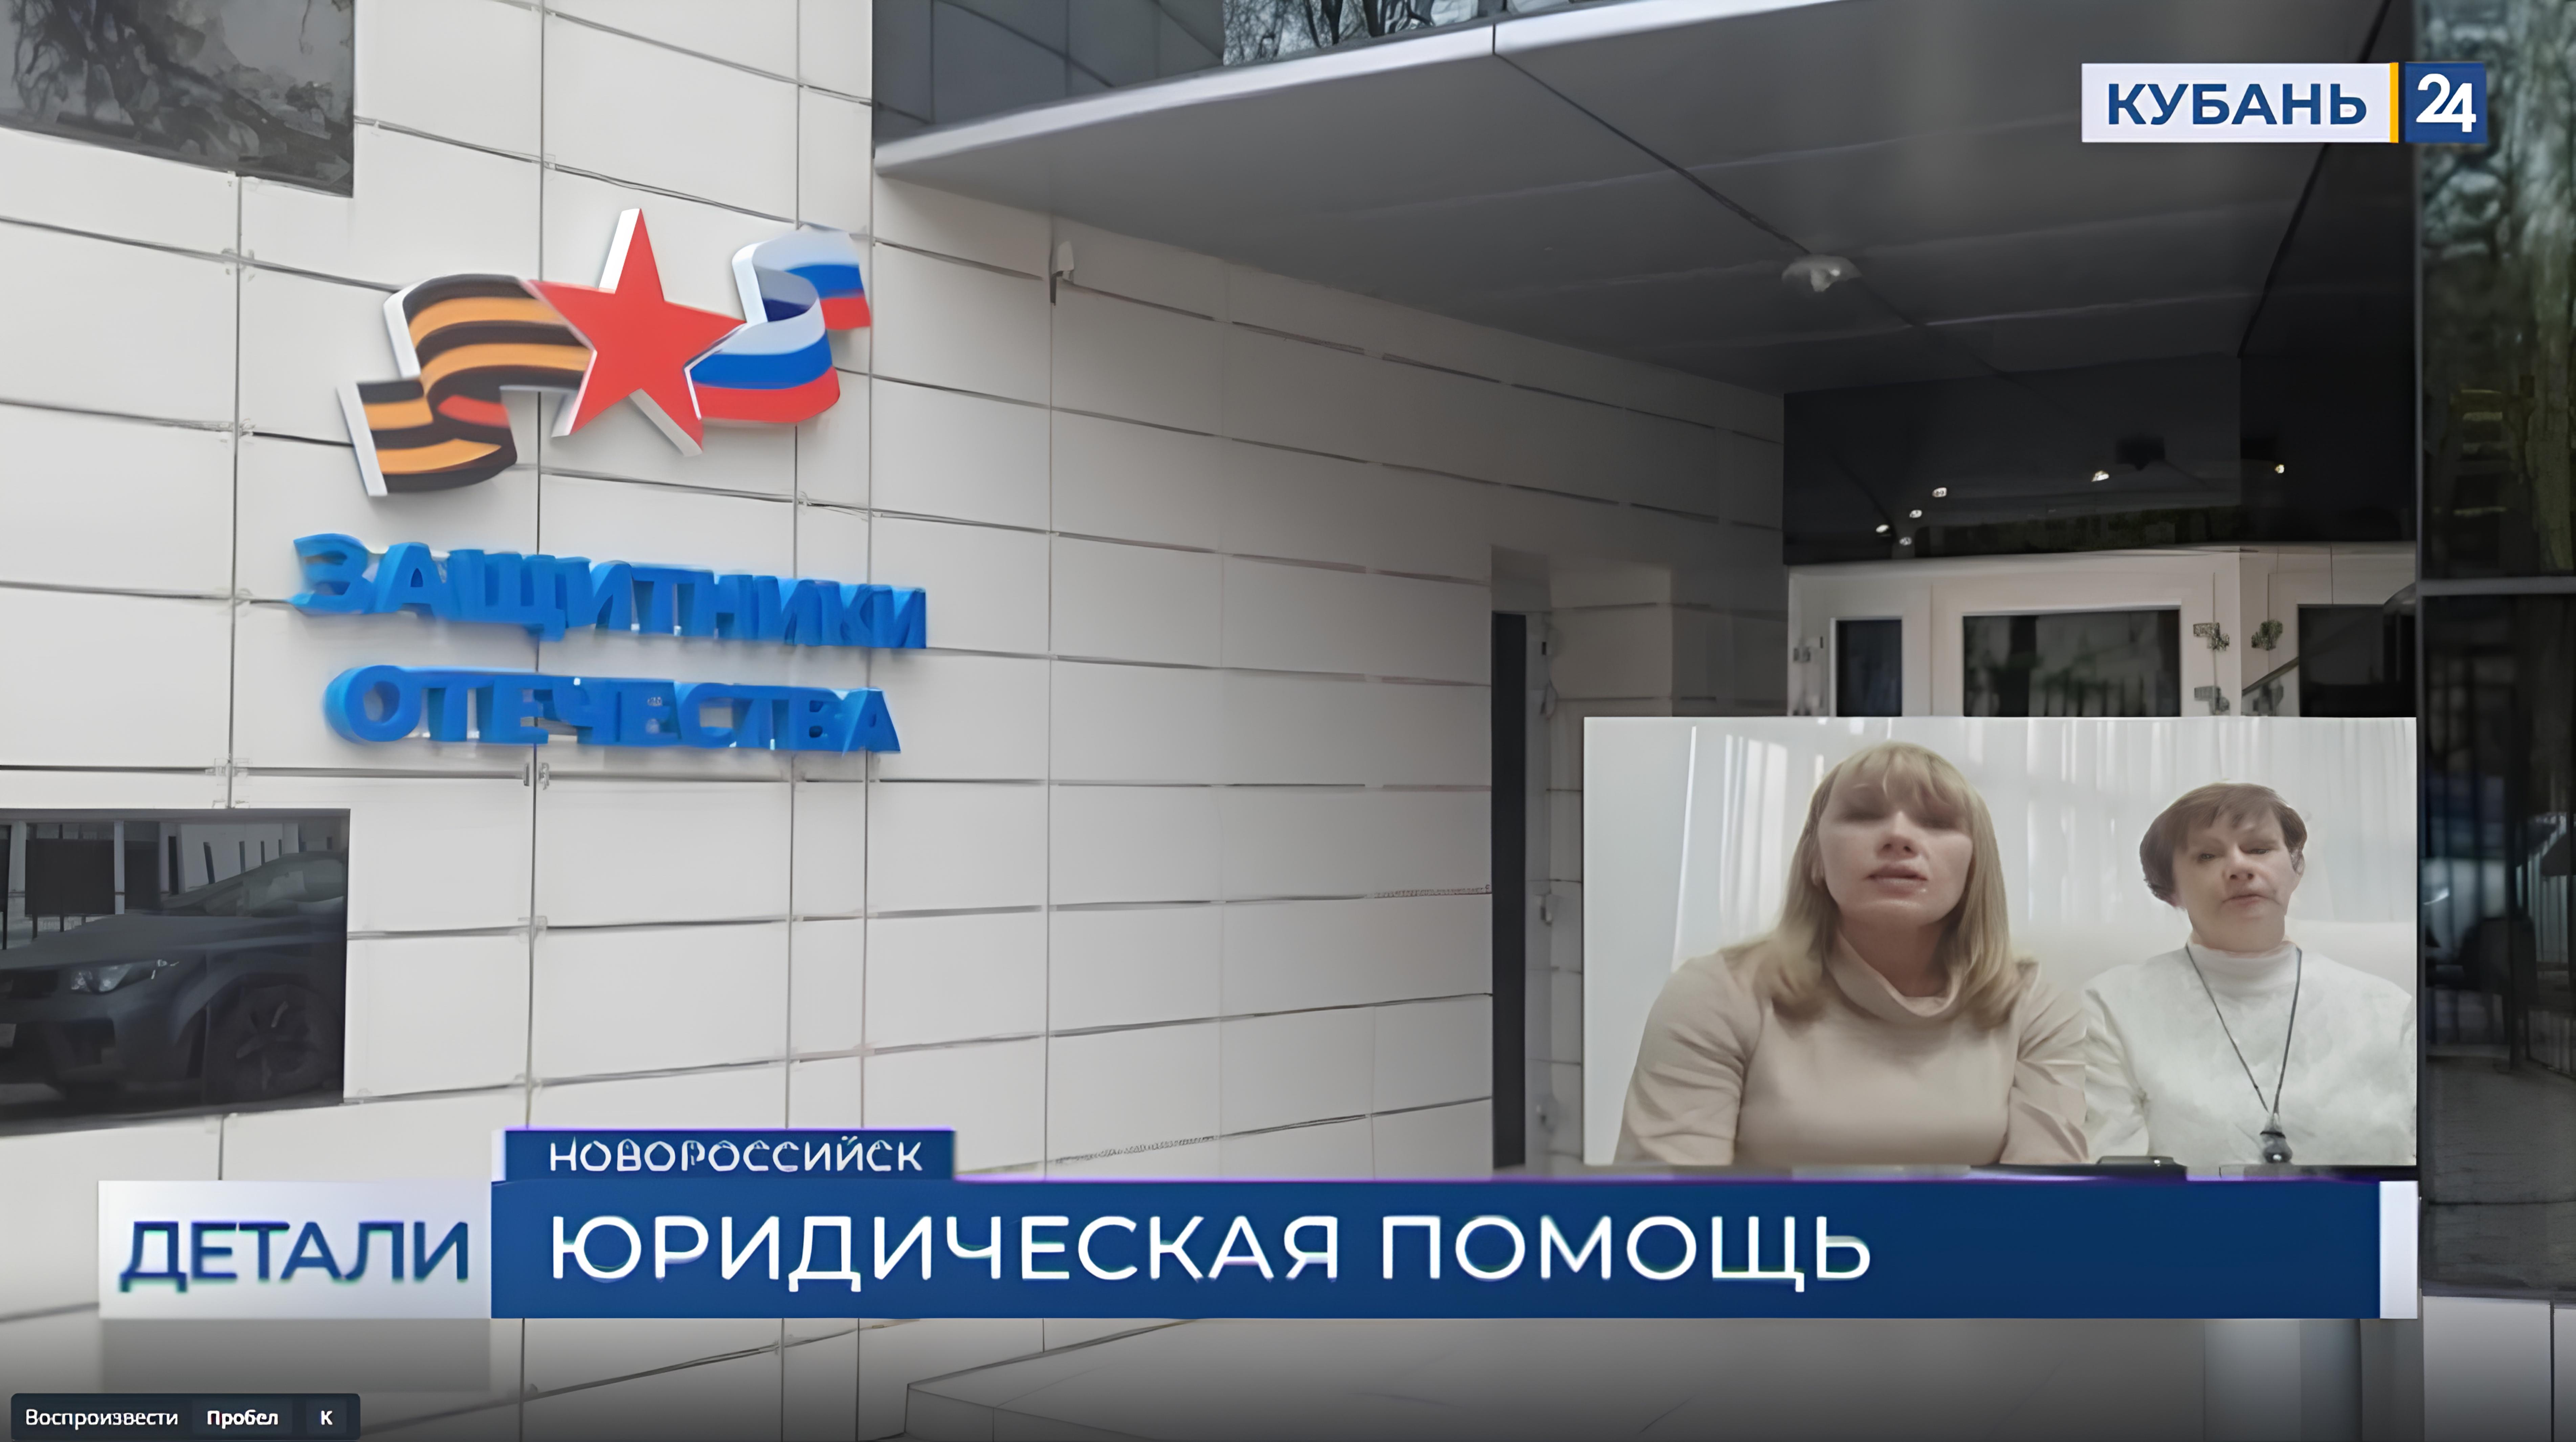 Бесплатная юридическая помощь теперь доступна в Новороссийске